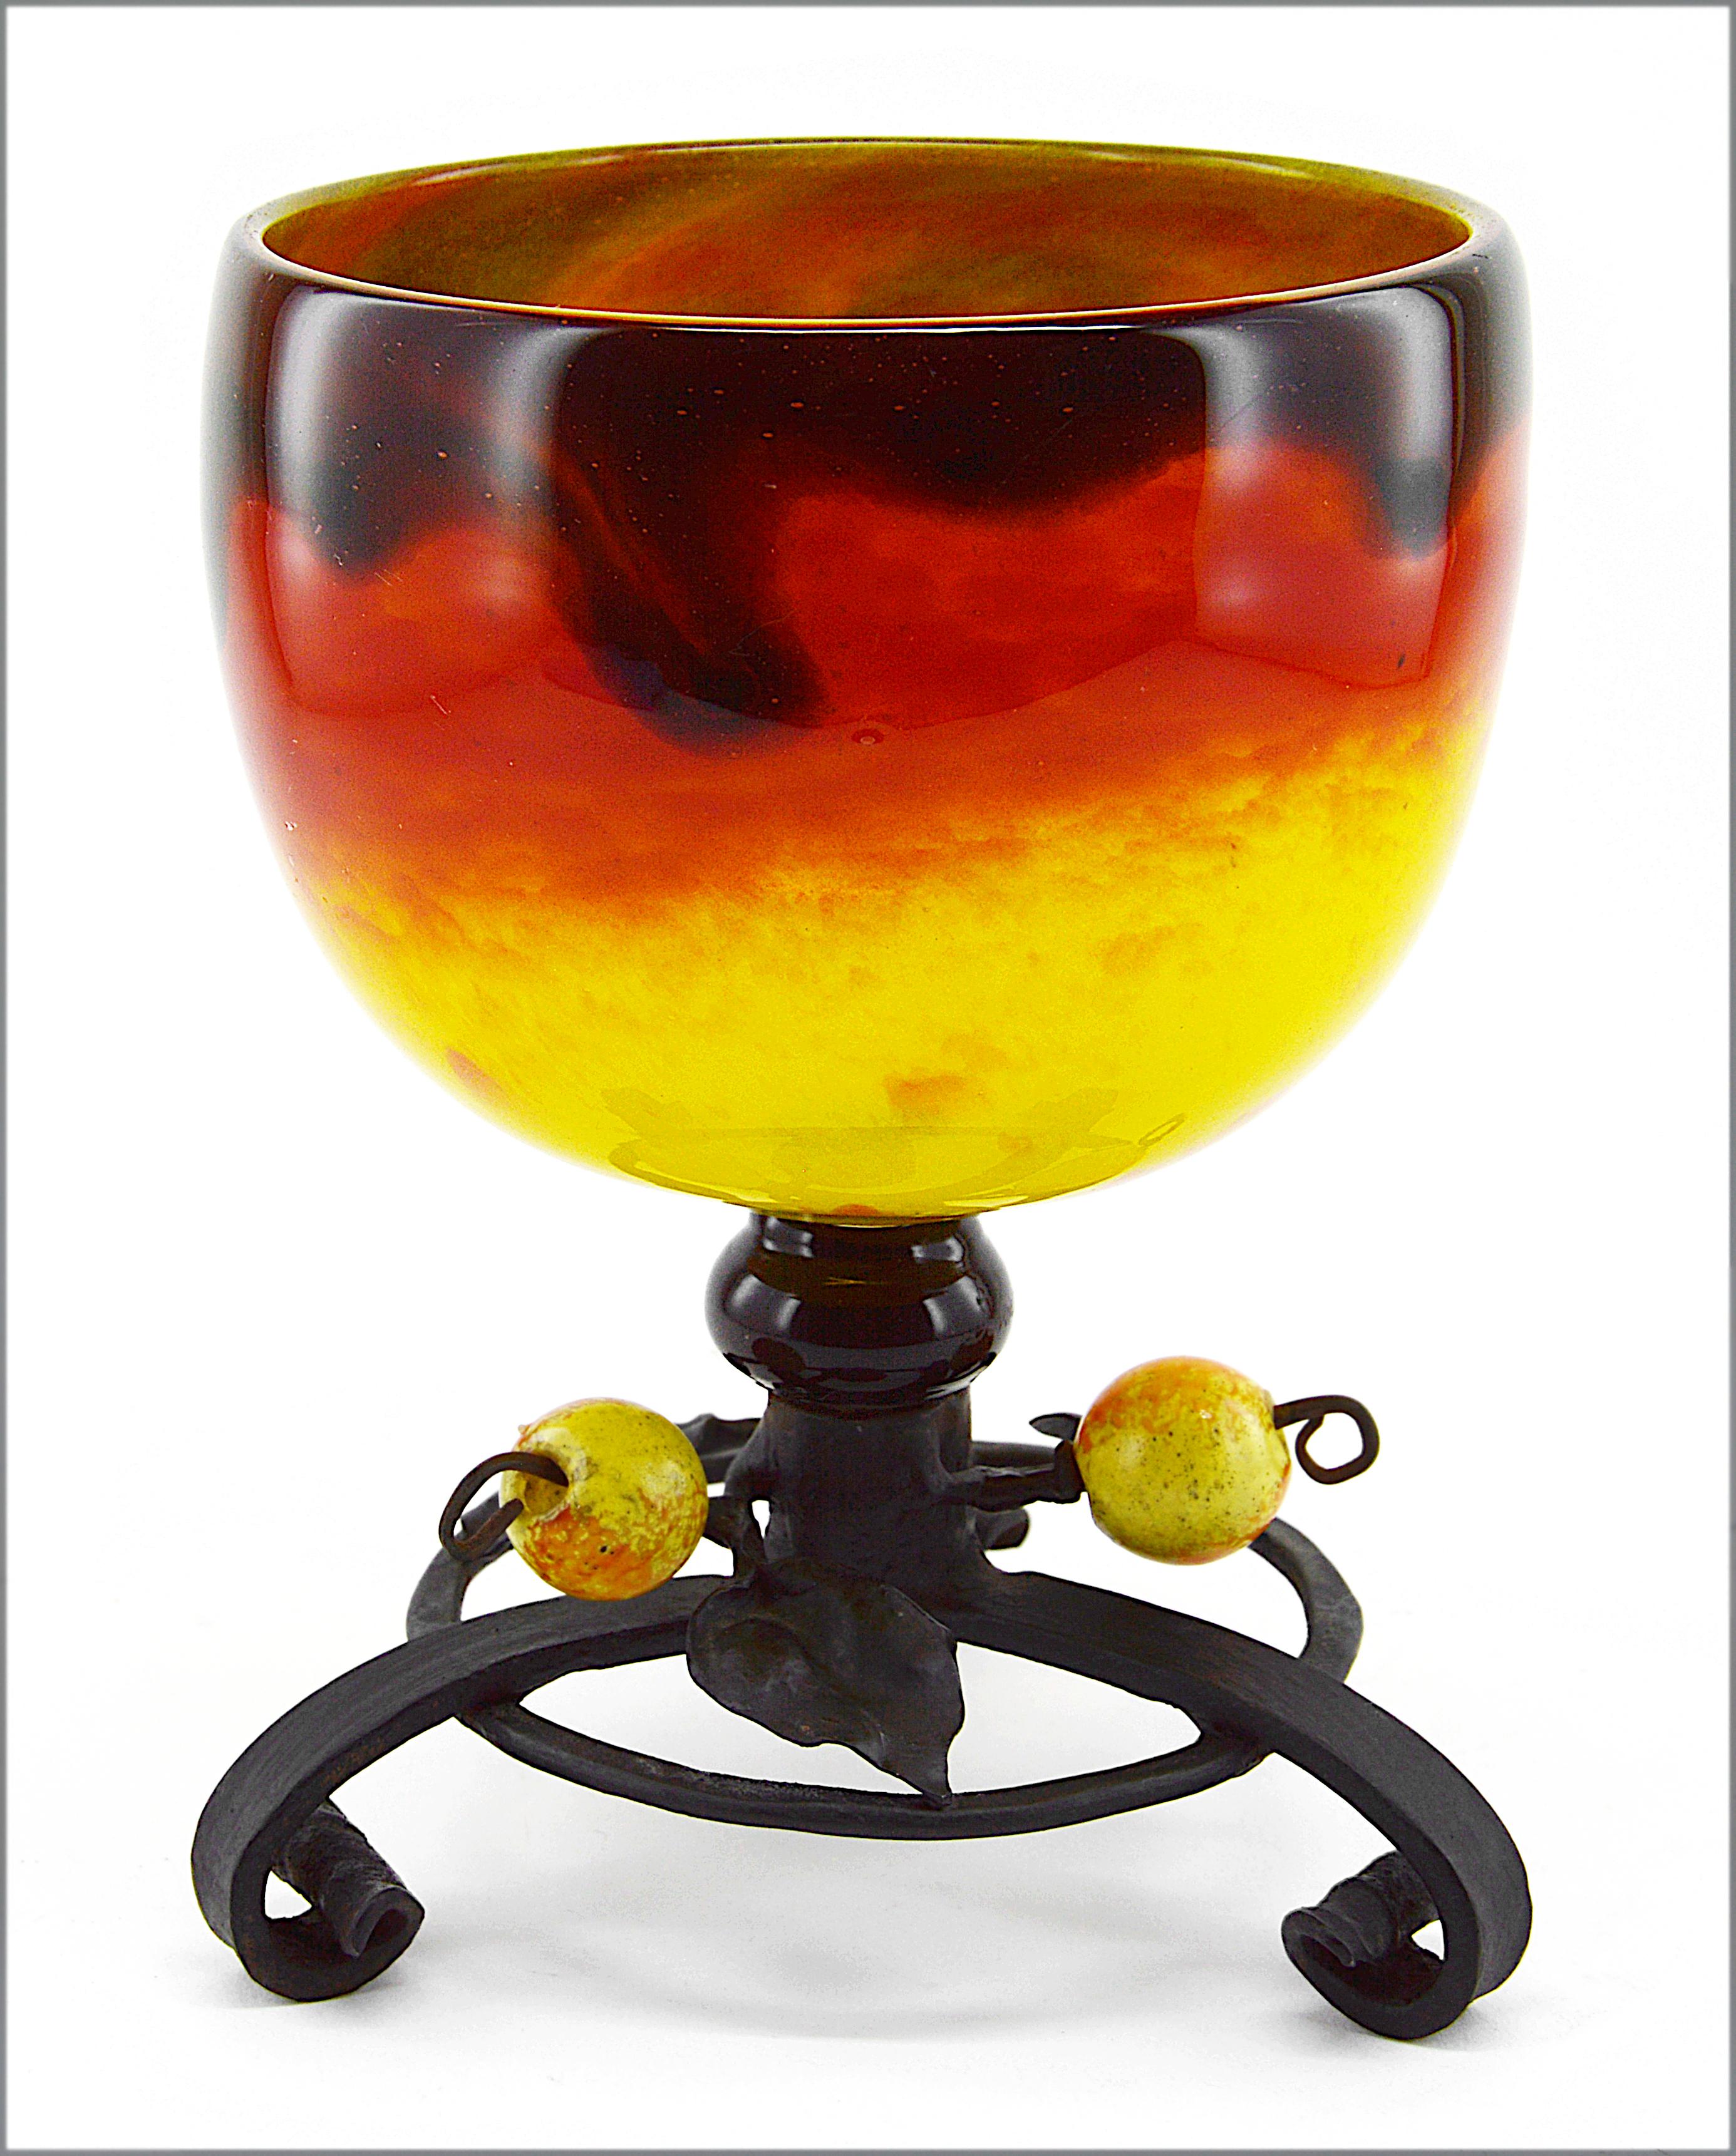 Französische Art-déco-Vase von Charles Schneider Epinay-sur-Seine (Paris), 1914-1918. Ungewöhnliche Vase mit leuchtend gelben und satten orangefarbenen Farben, überzogen mit einem Schleier aus dunklem Braun/Schwarz. Schmiedeeiserner Sockel, von